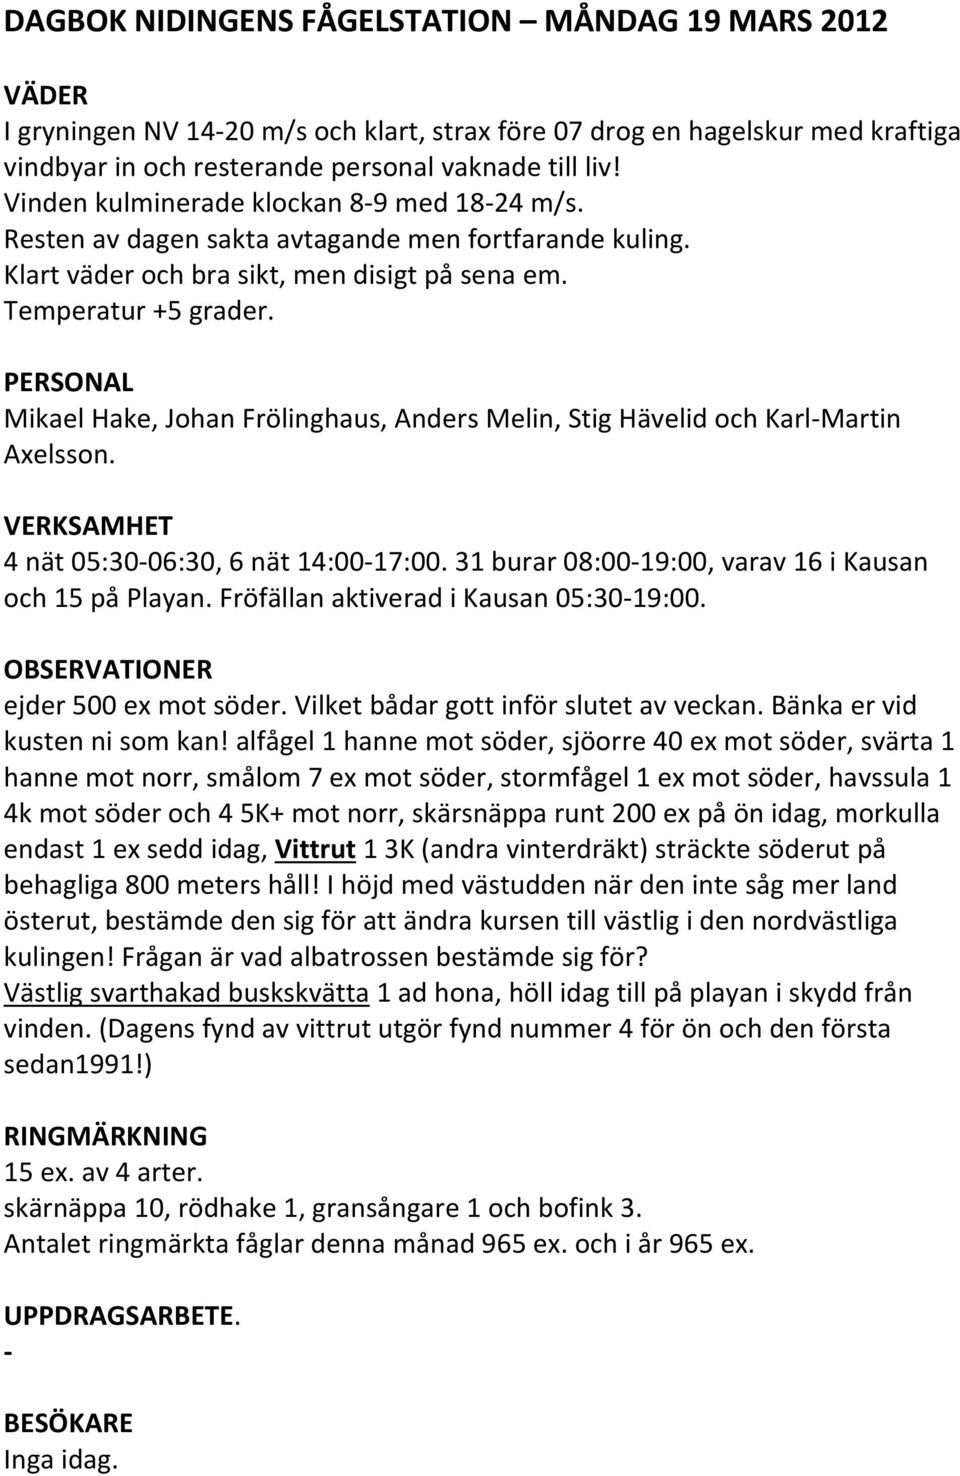 Mikael Hake, Johan Frölinghaus, Anders Melin, Stig Hävelid och Karl Martin Axelsson. 4 nät 05:30 06:30, 6 nät 14:00 17:00. 31 burar 08:00 19:00, varav 16 i Kausan och 15 på Playan.